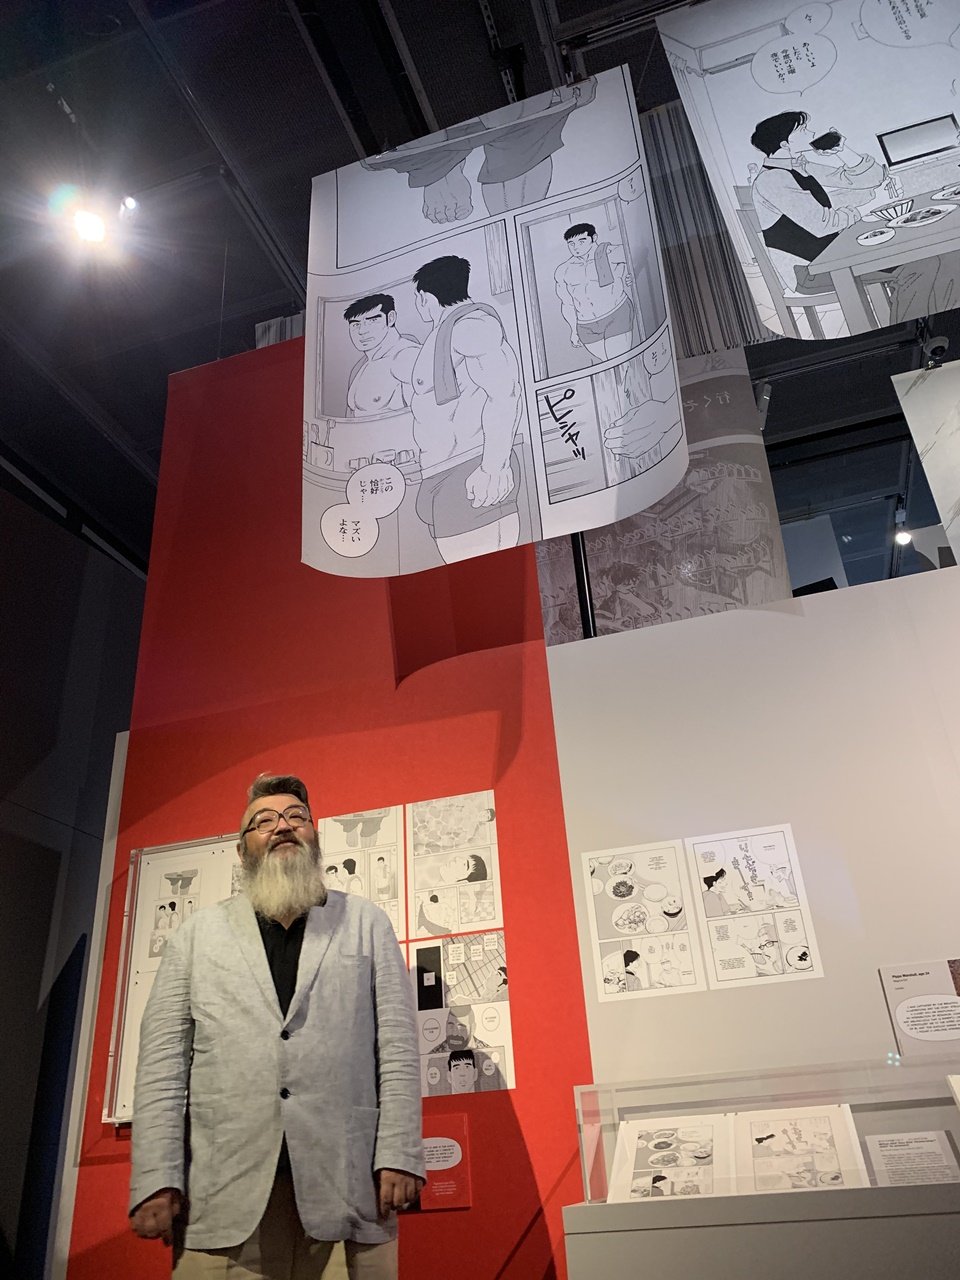 『弟の夫』漫画家・田亀源五郎「イギリス上陸と同性愛を語る！」大英博物館に展示された複製原画が手に入る!?の画像001